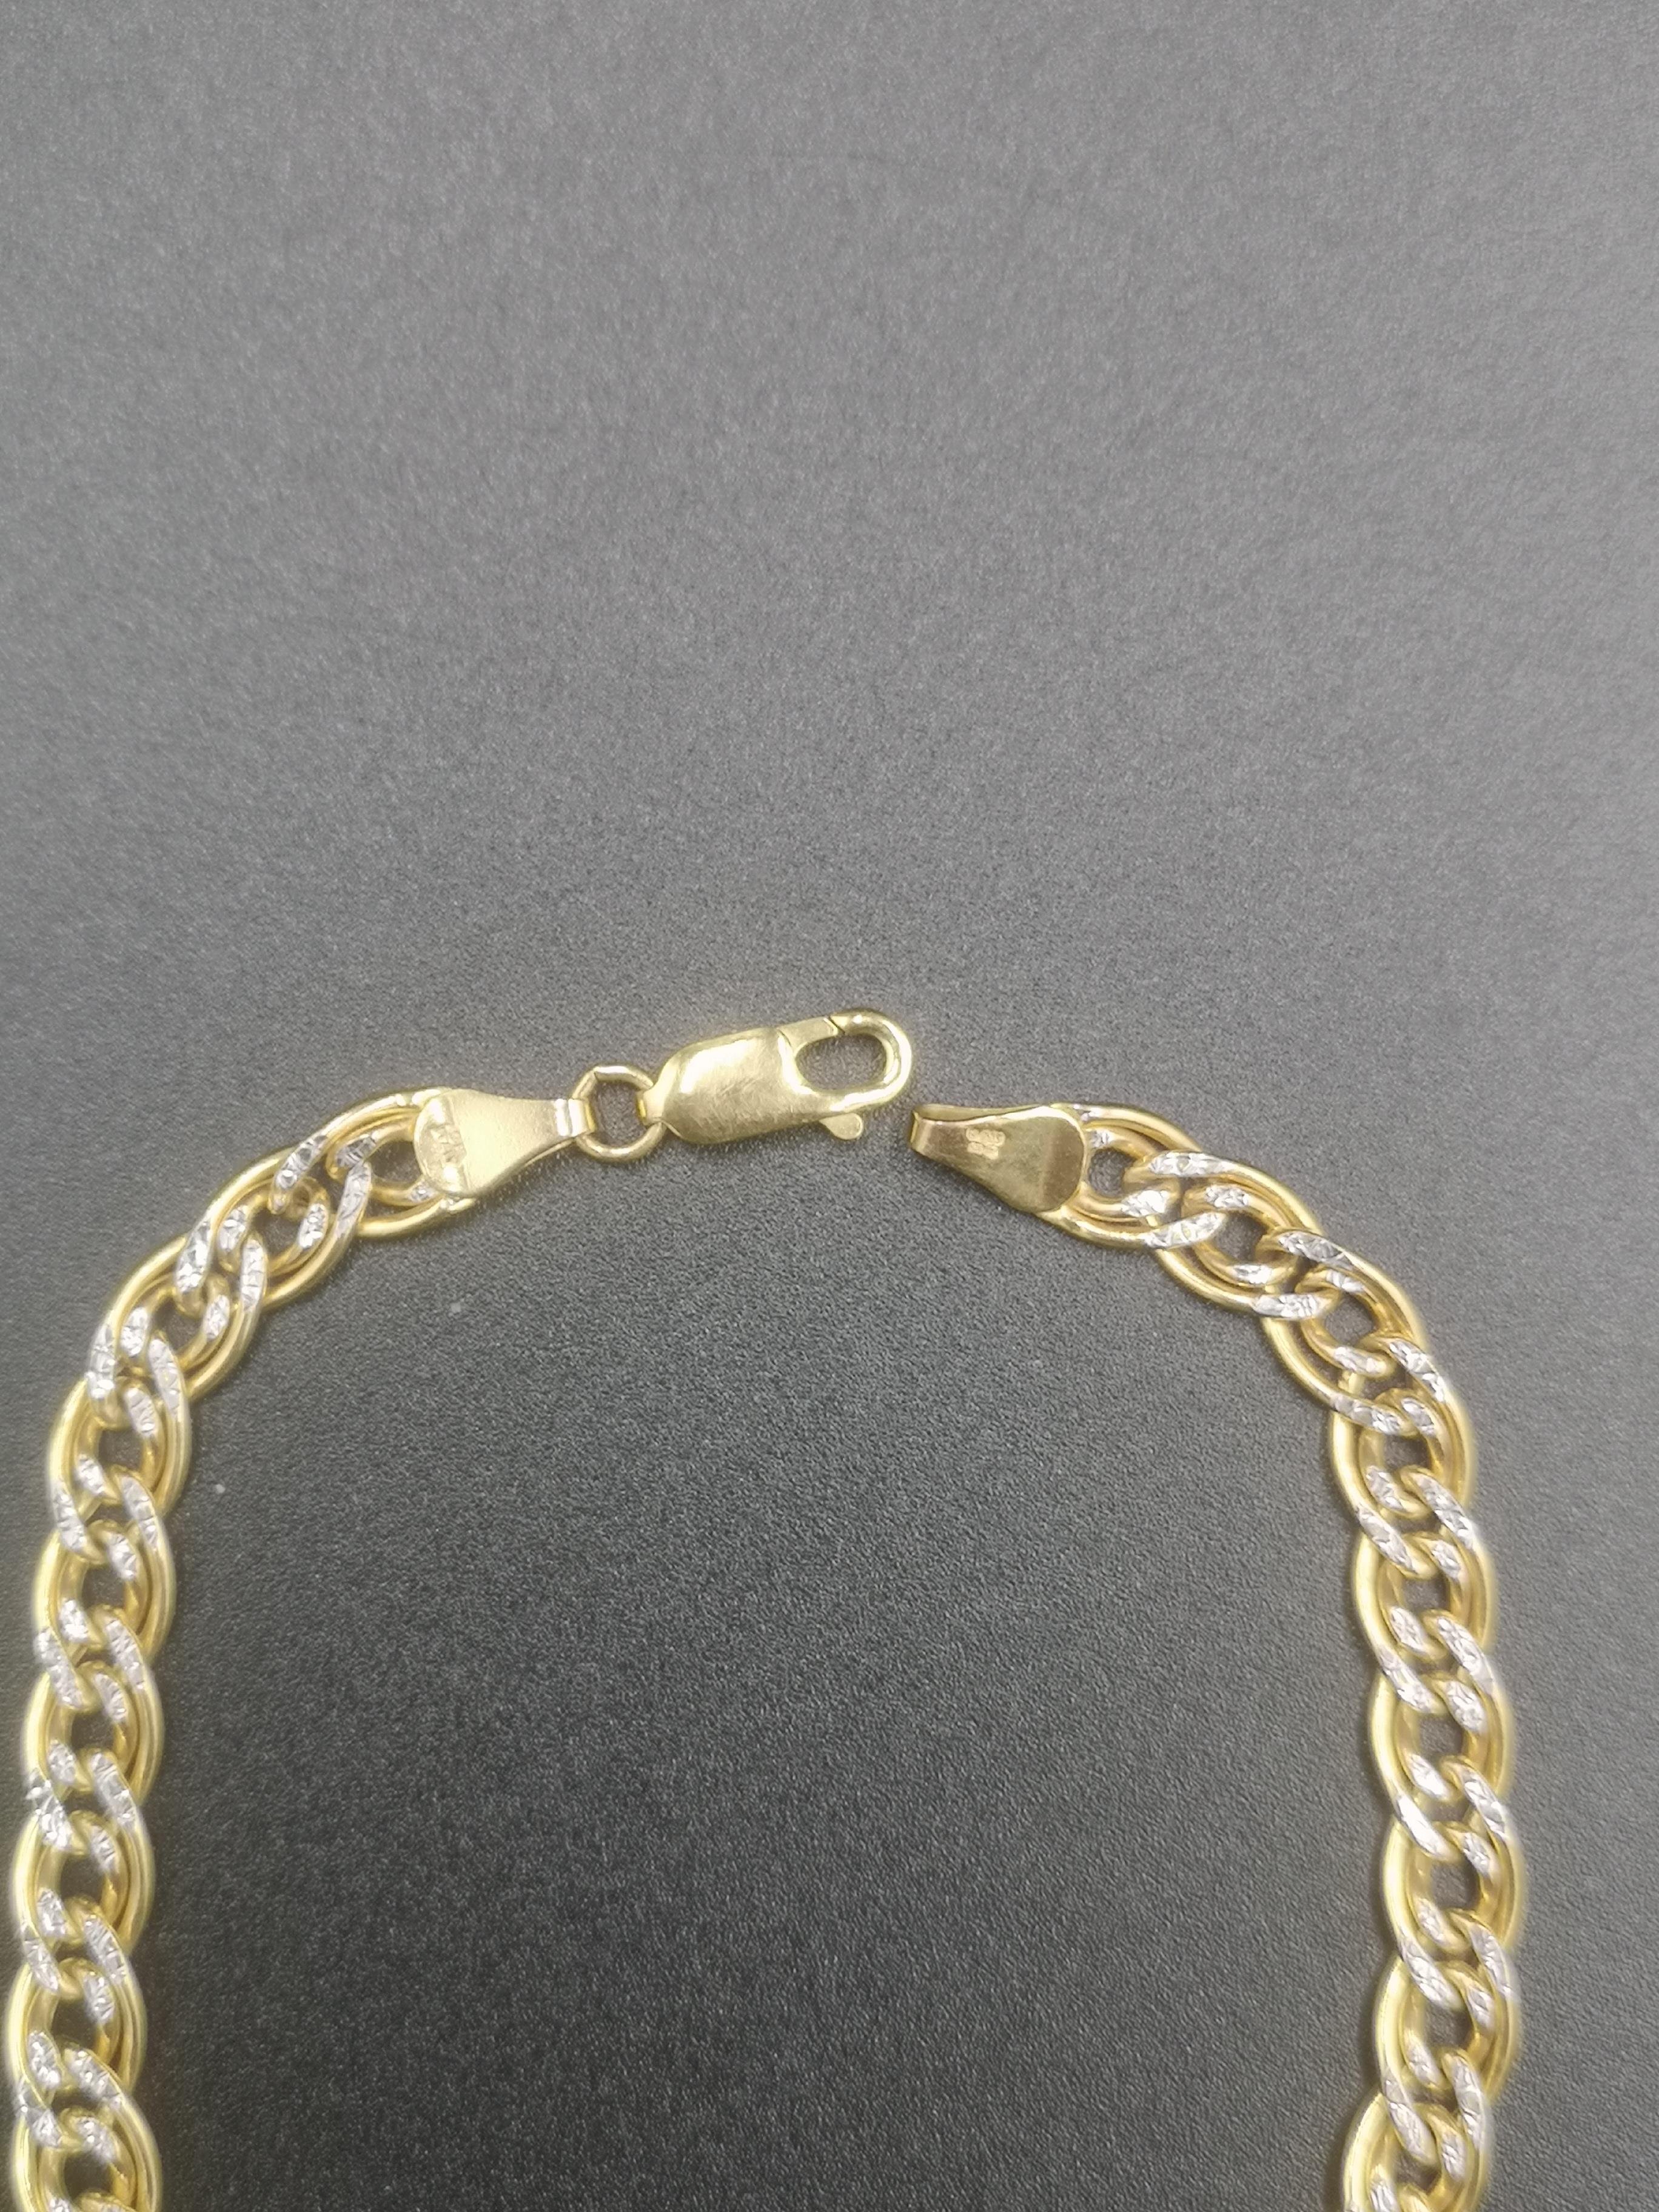 9ct gold curb link bracelet - Image 2 of 4